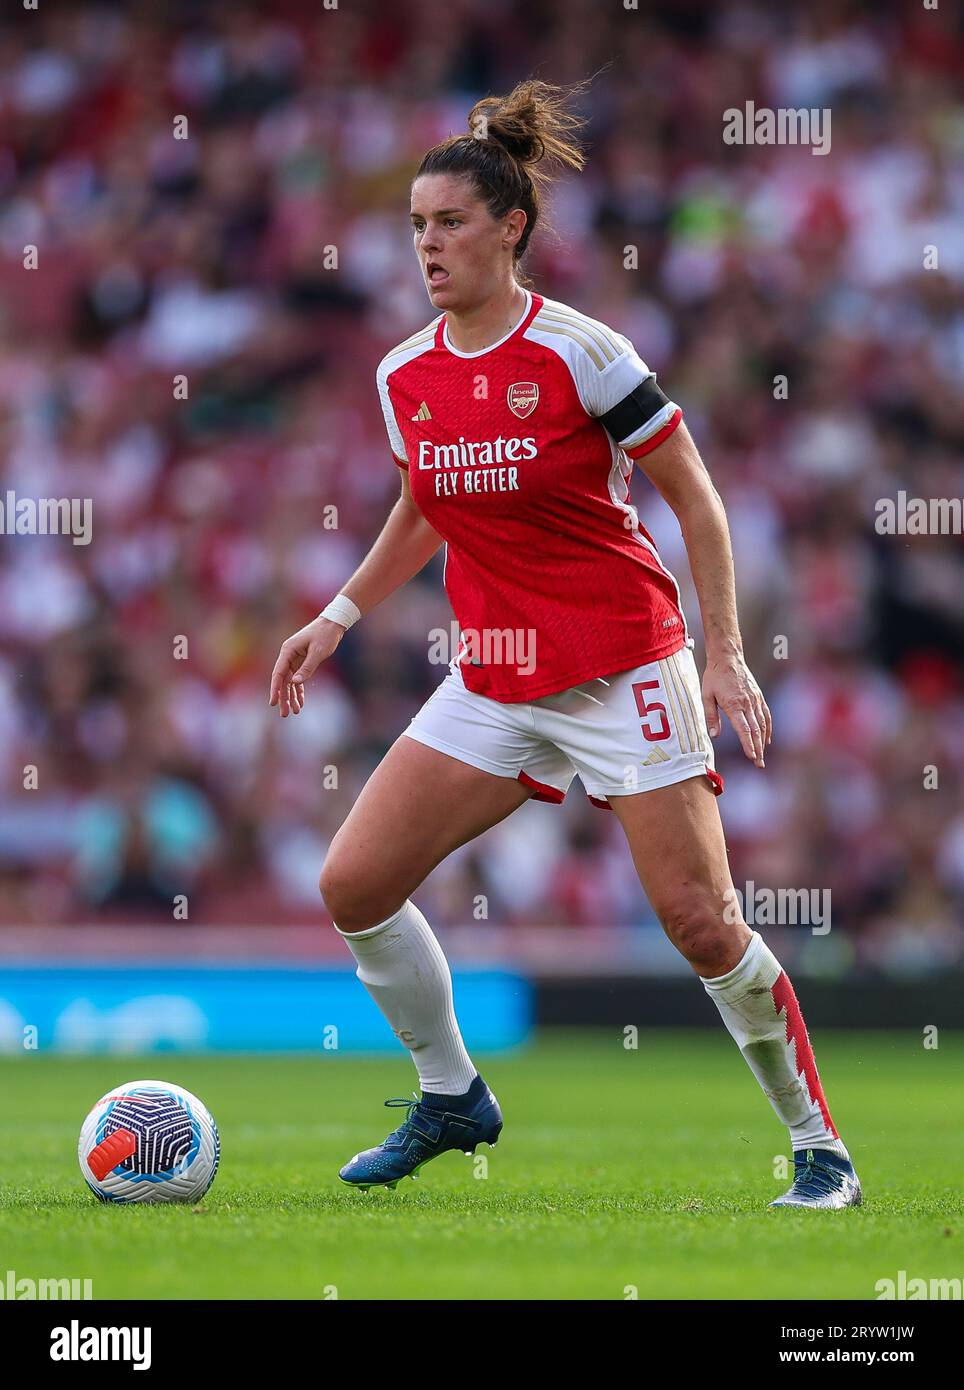 Jen Beattie dell'Arsenal in azione durante il Barclays Women's Super League match all'Emirates Stadium di Londra. Data immagine: Domenica 1 ottobre 2023. Foto Stock